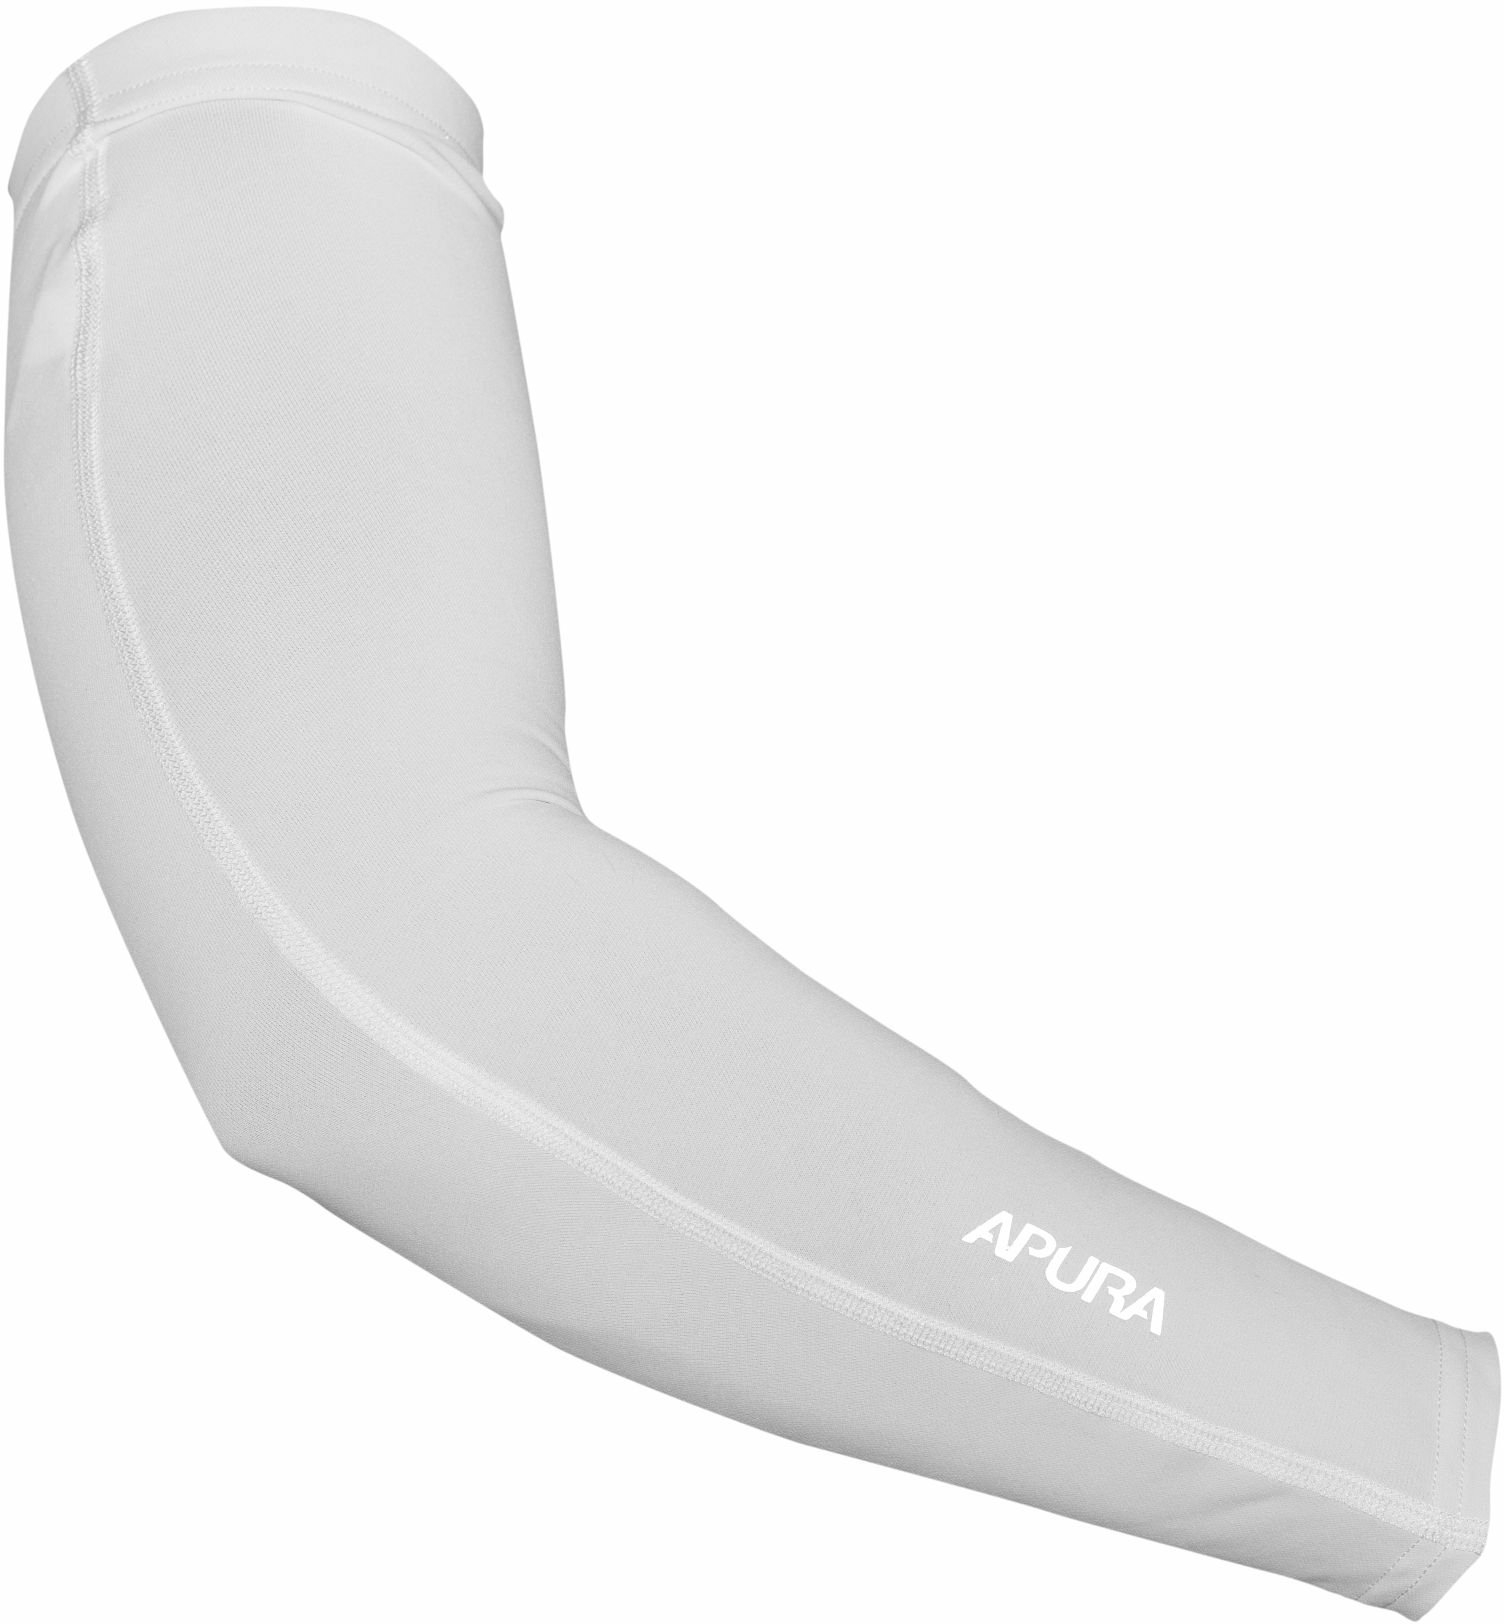 Apura Damen/Herren Armlinge UV Shield L white